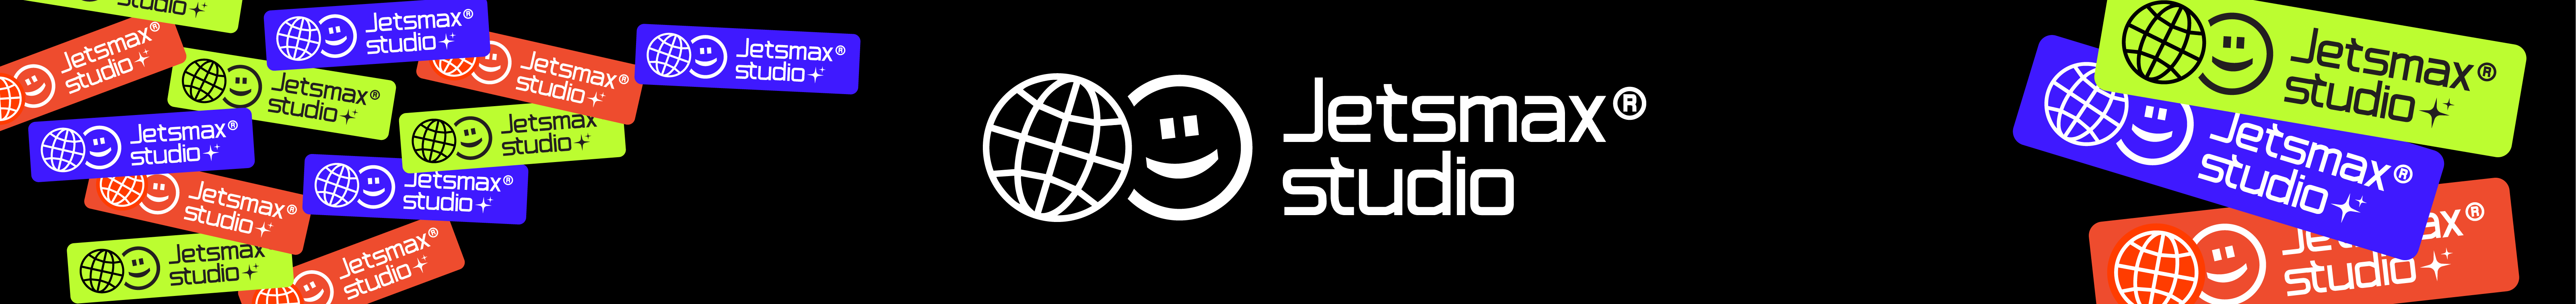 Jetsmax® Studio profil başlığı